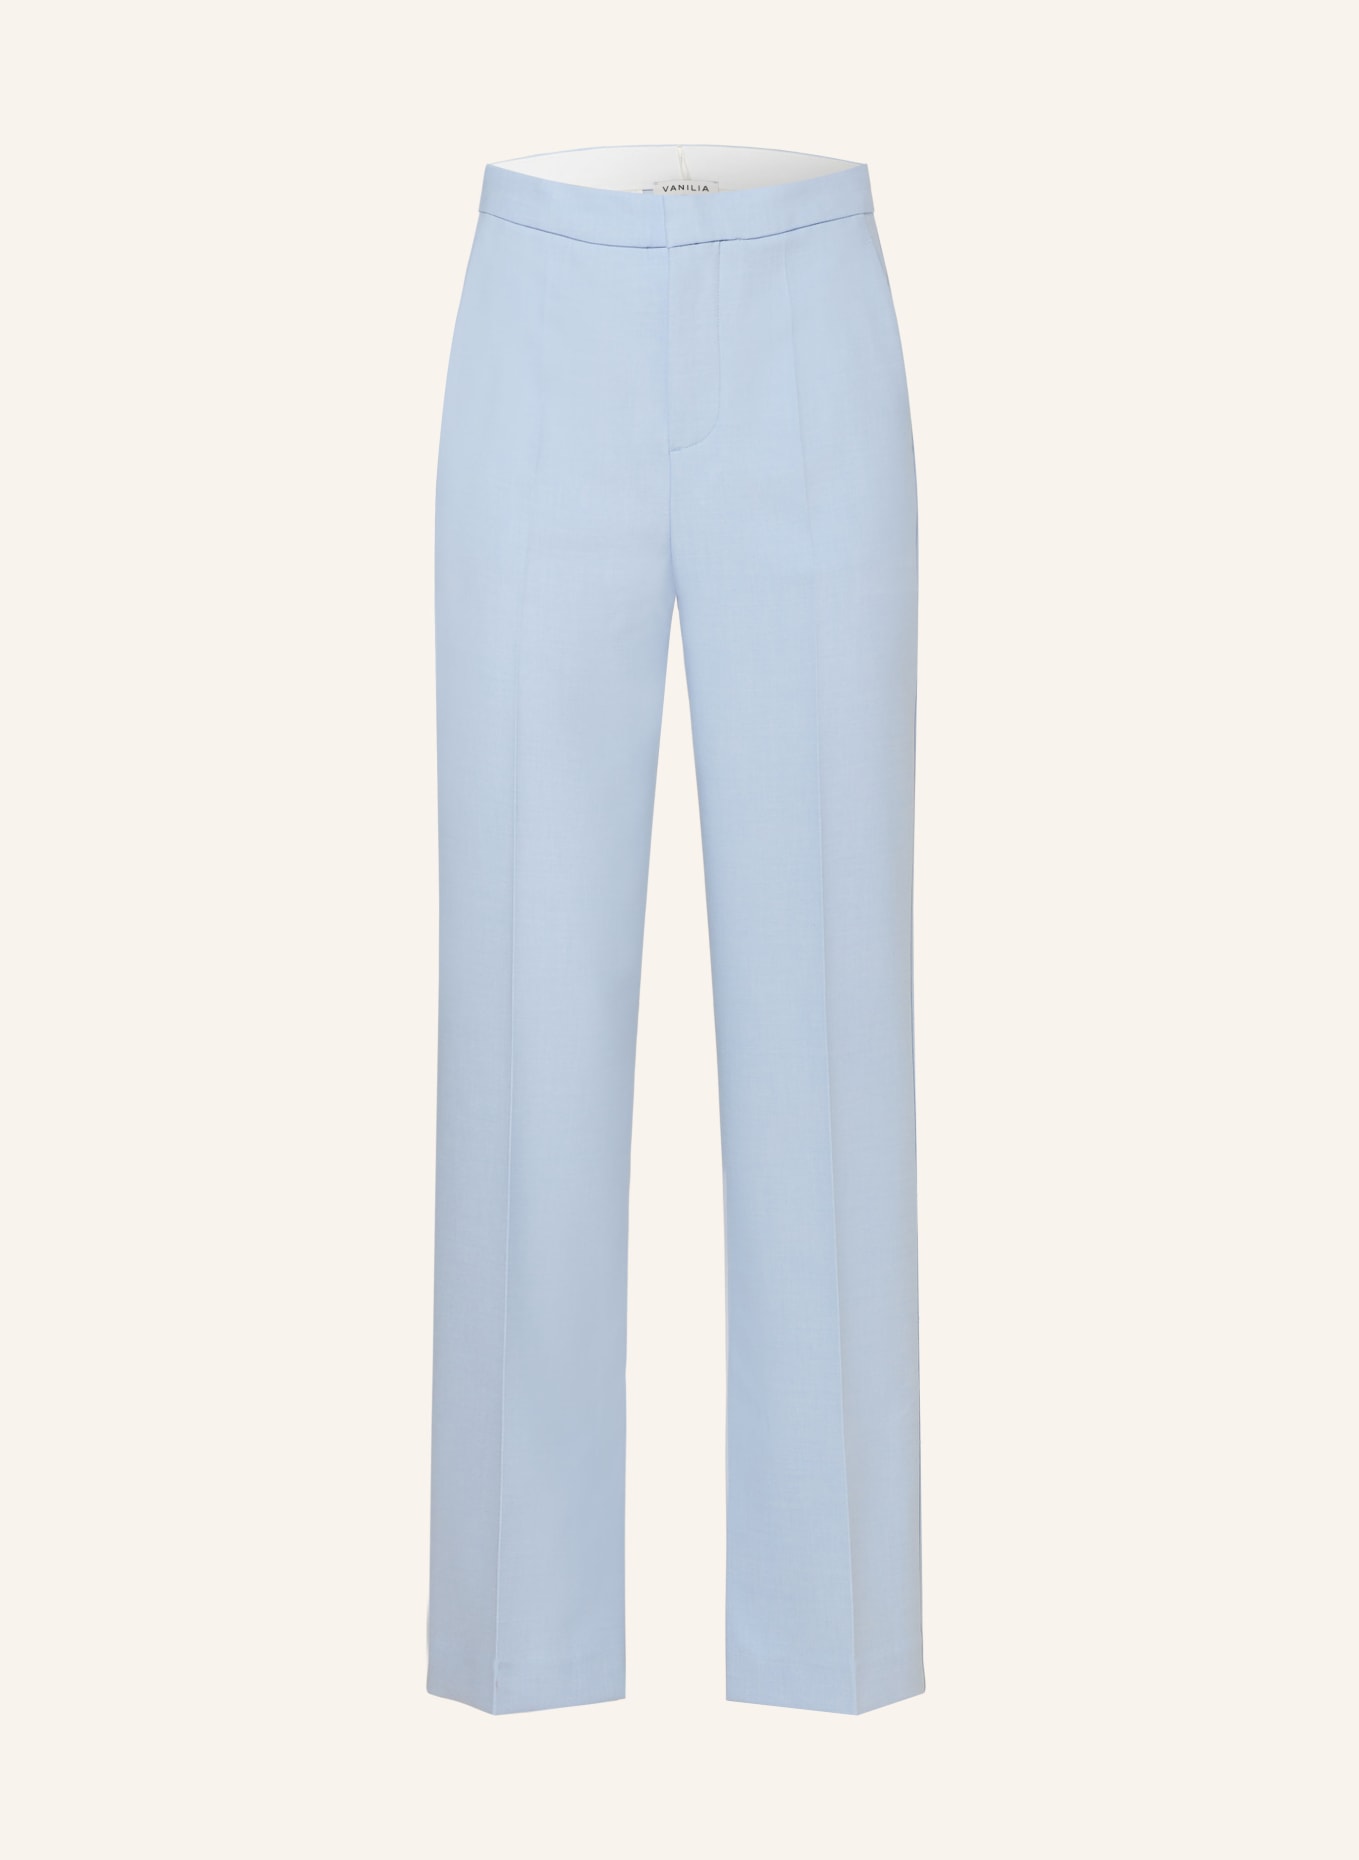 VANILIA Wide leg trousers, Color: LIGHT BLUE (Image 1)